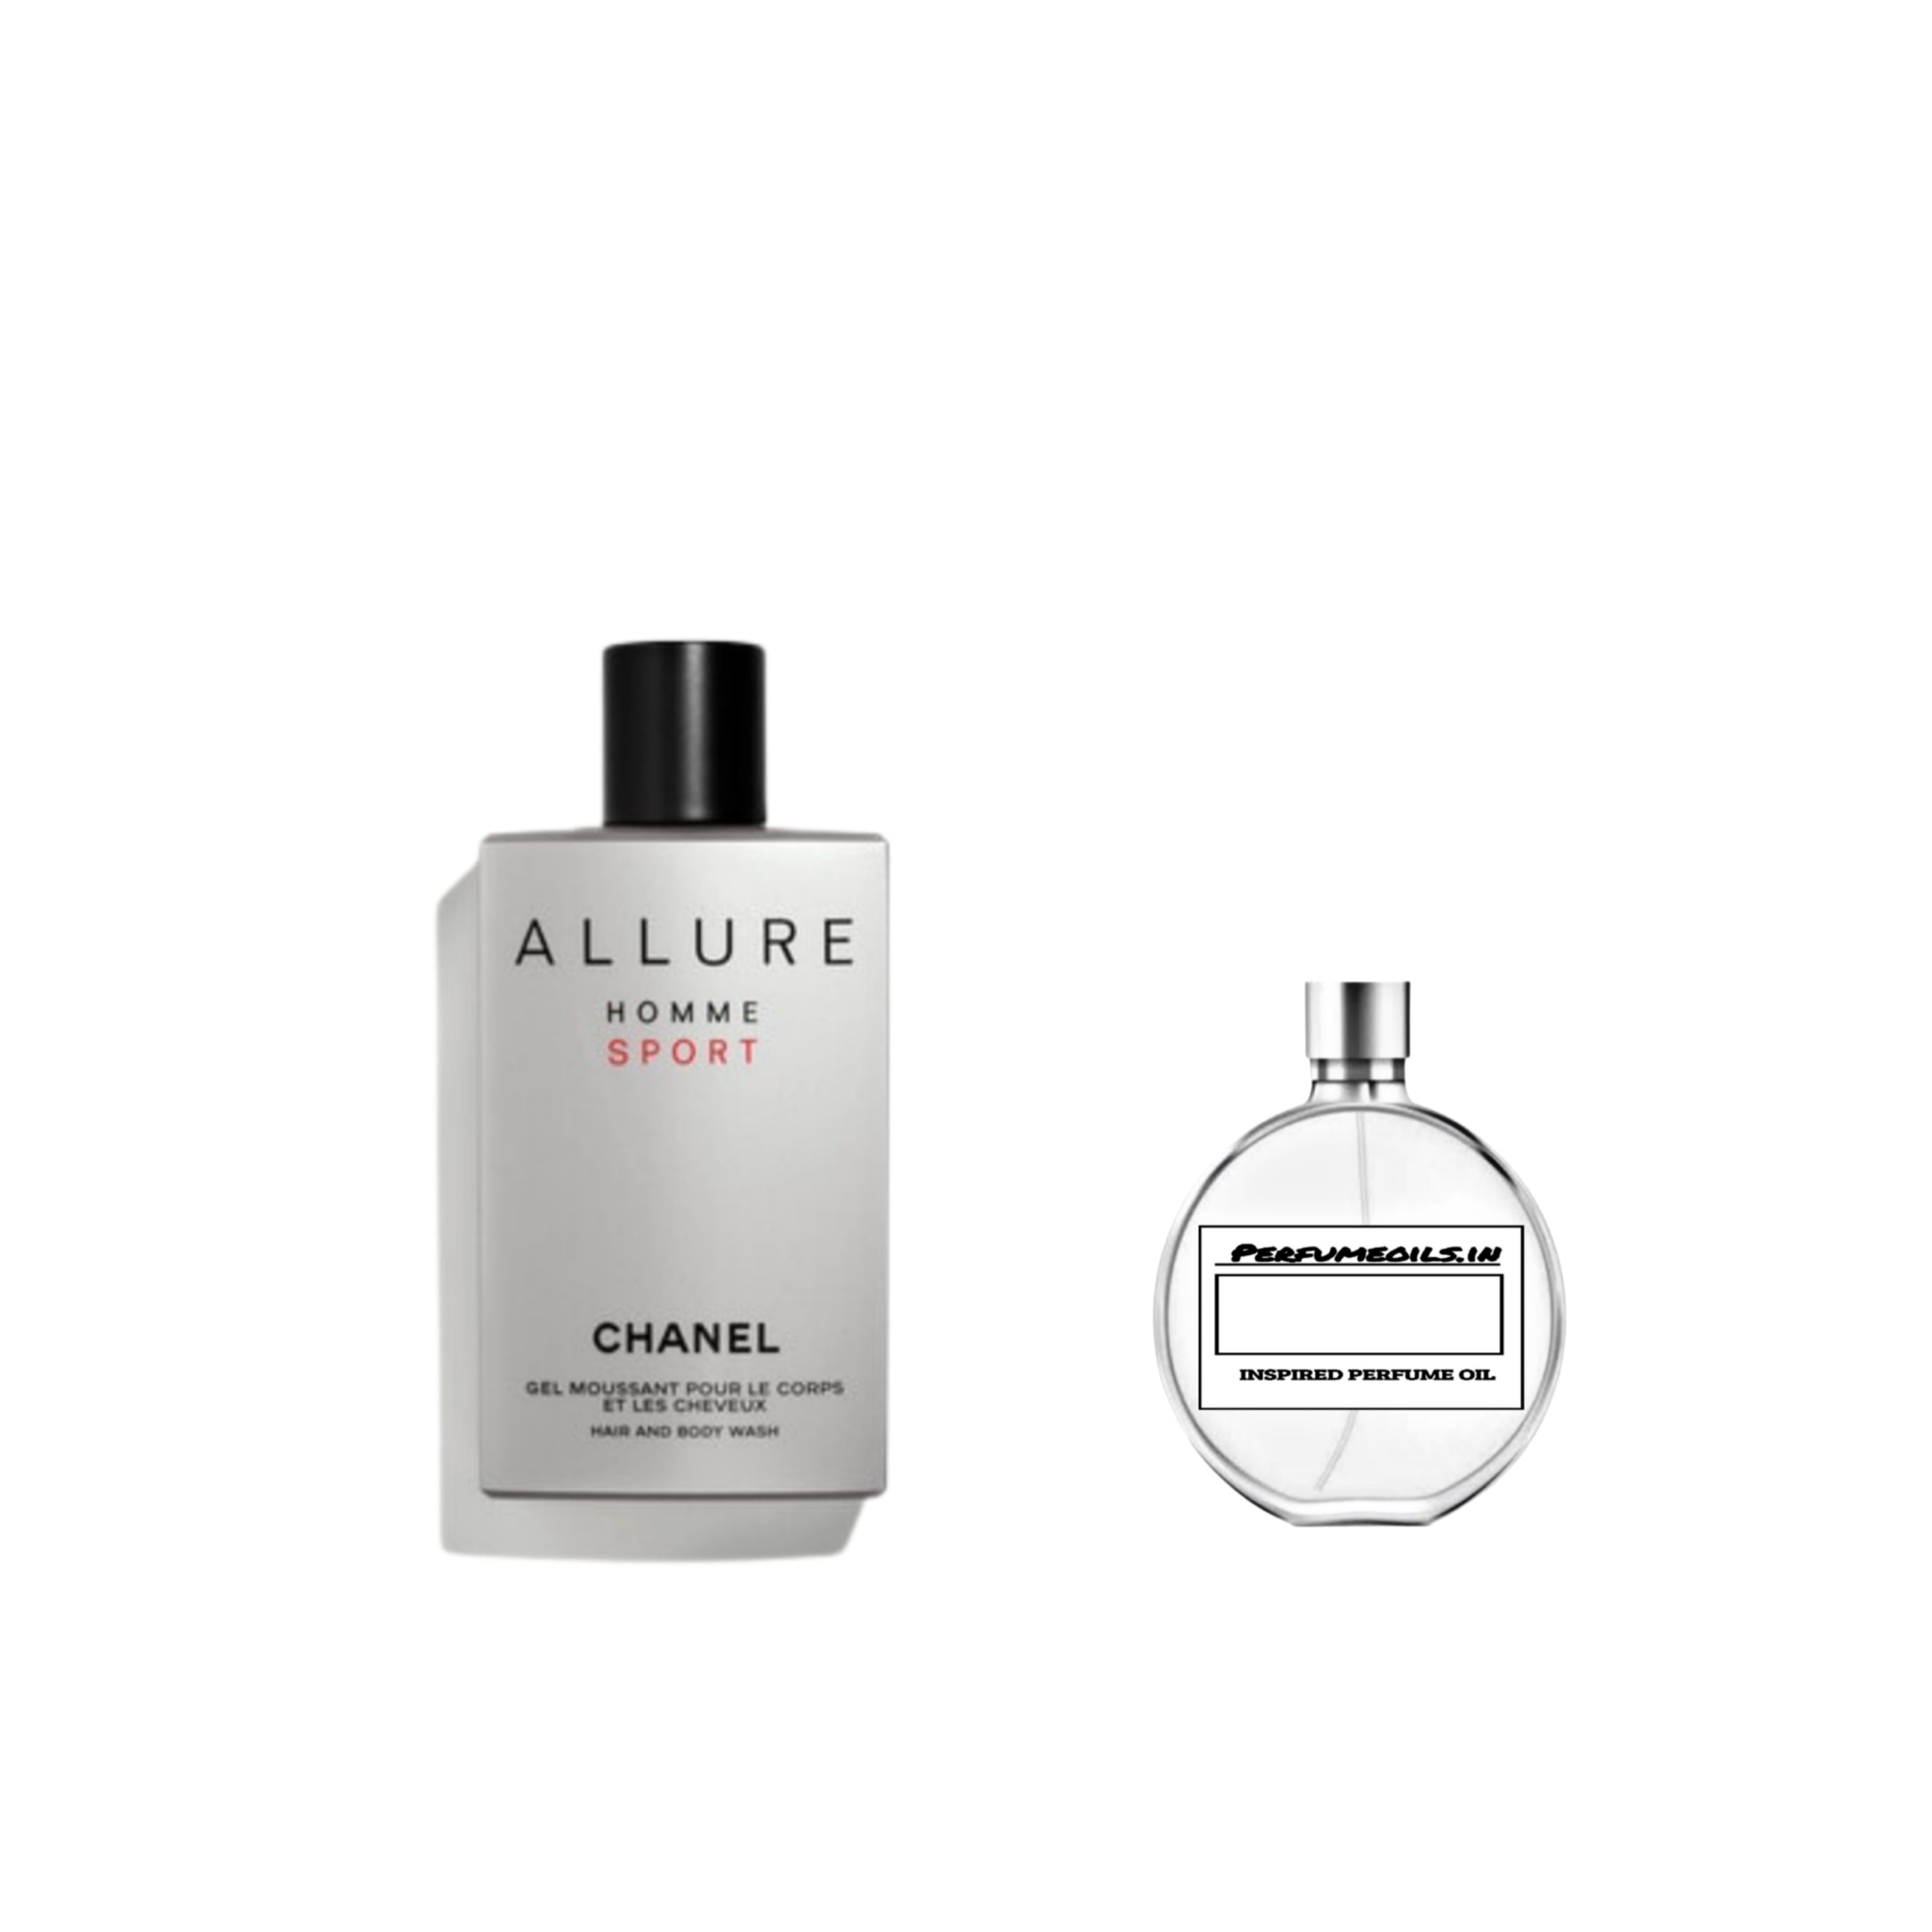 Allure Homme Sport Chanel for men for men inspired Perfume Oil – perfumeoils